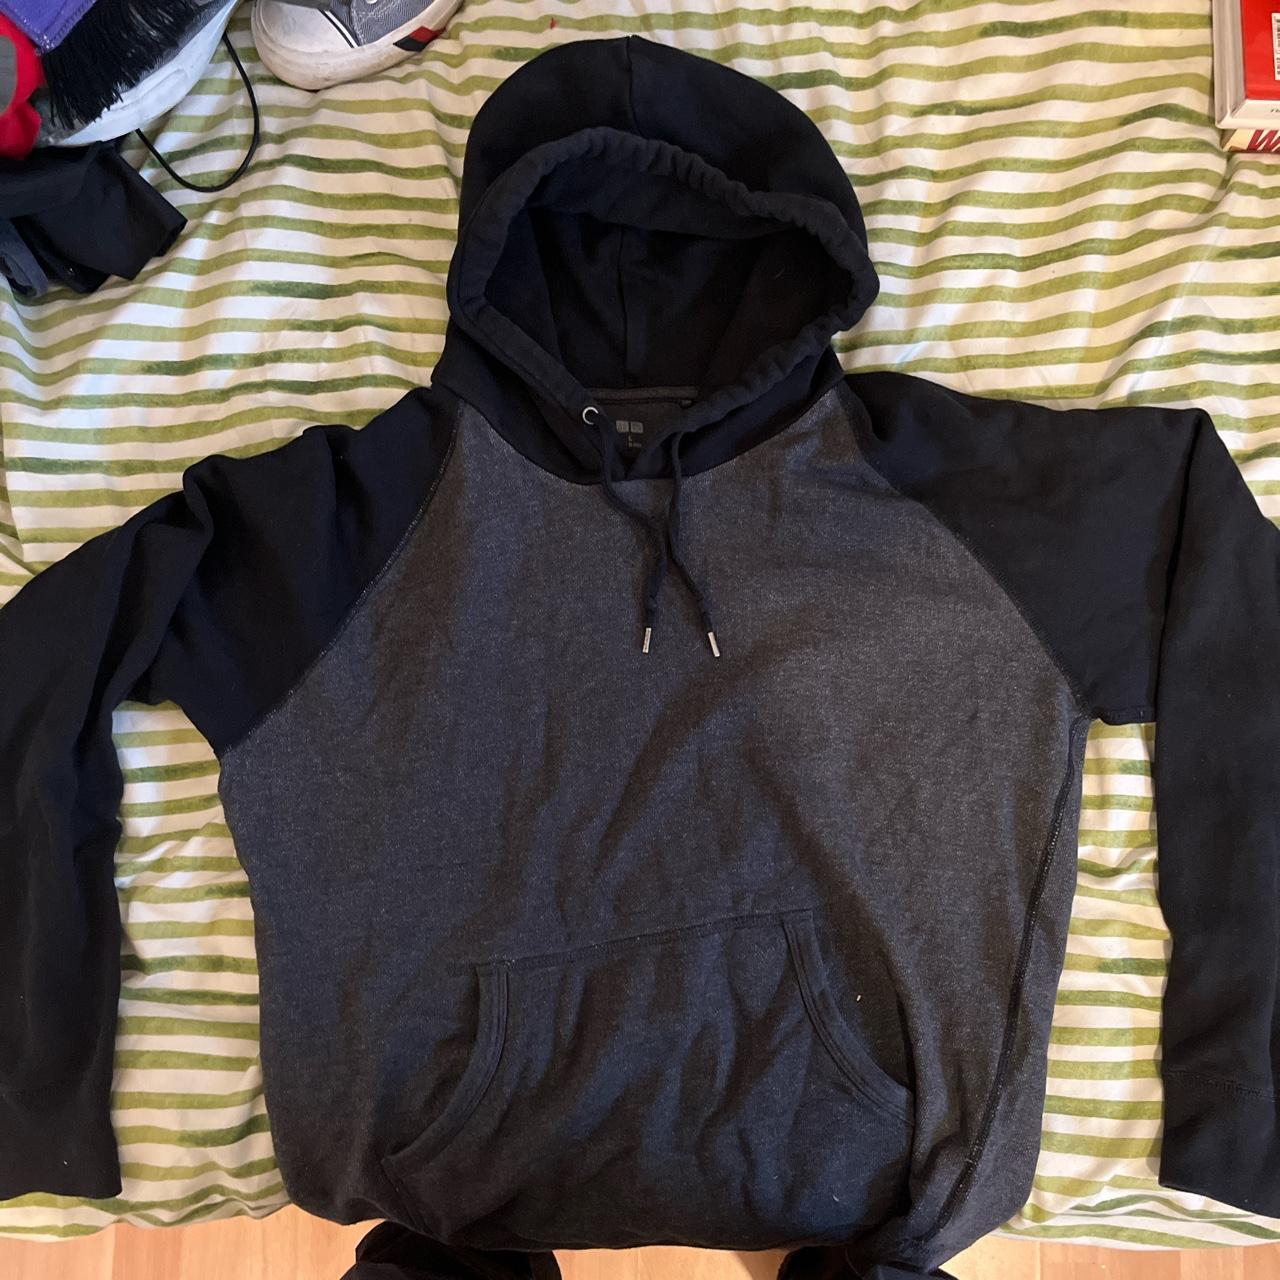 Uniqlo hoodie Grey and black Large - Depop